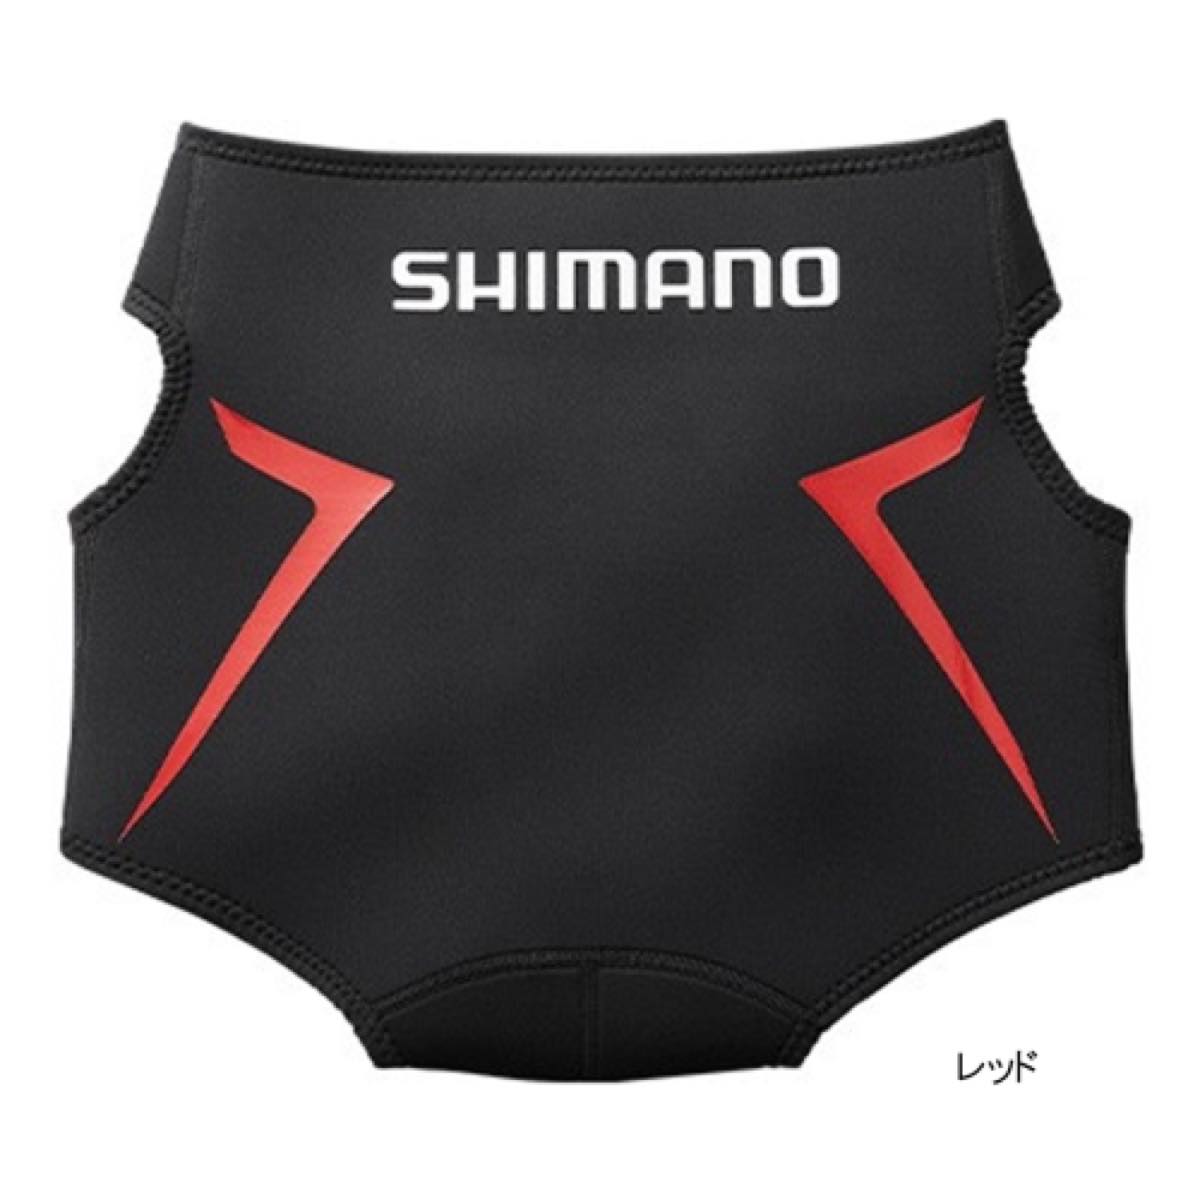 シマノ(SHIMANO) ヒップガード GU-011S XL レッド